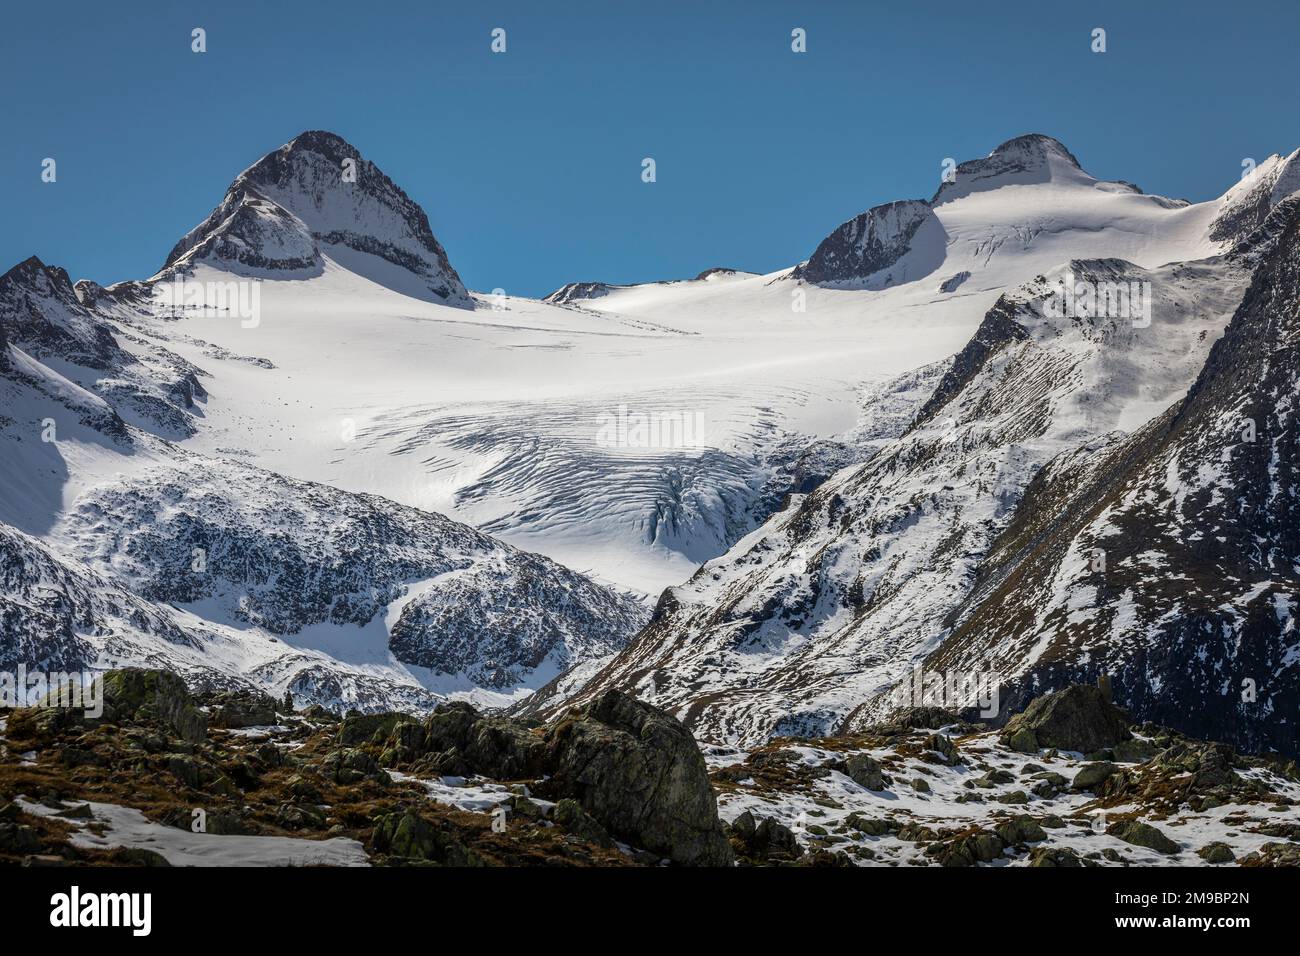 Le spettacolari alpi svizzere Bernesi, viste dal Passo di Nufenen, in Svizzera Foto Stock